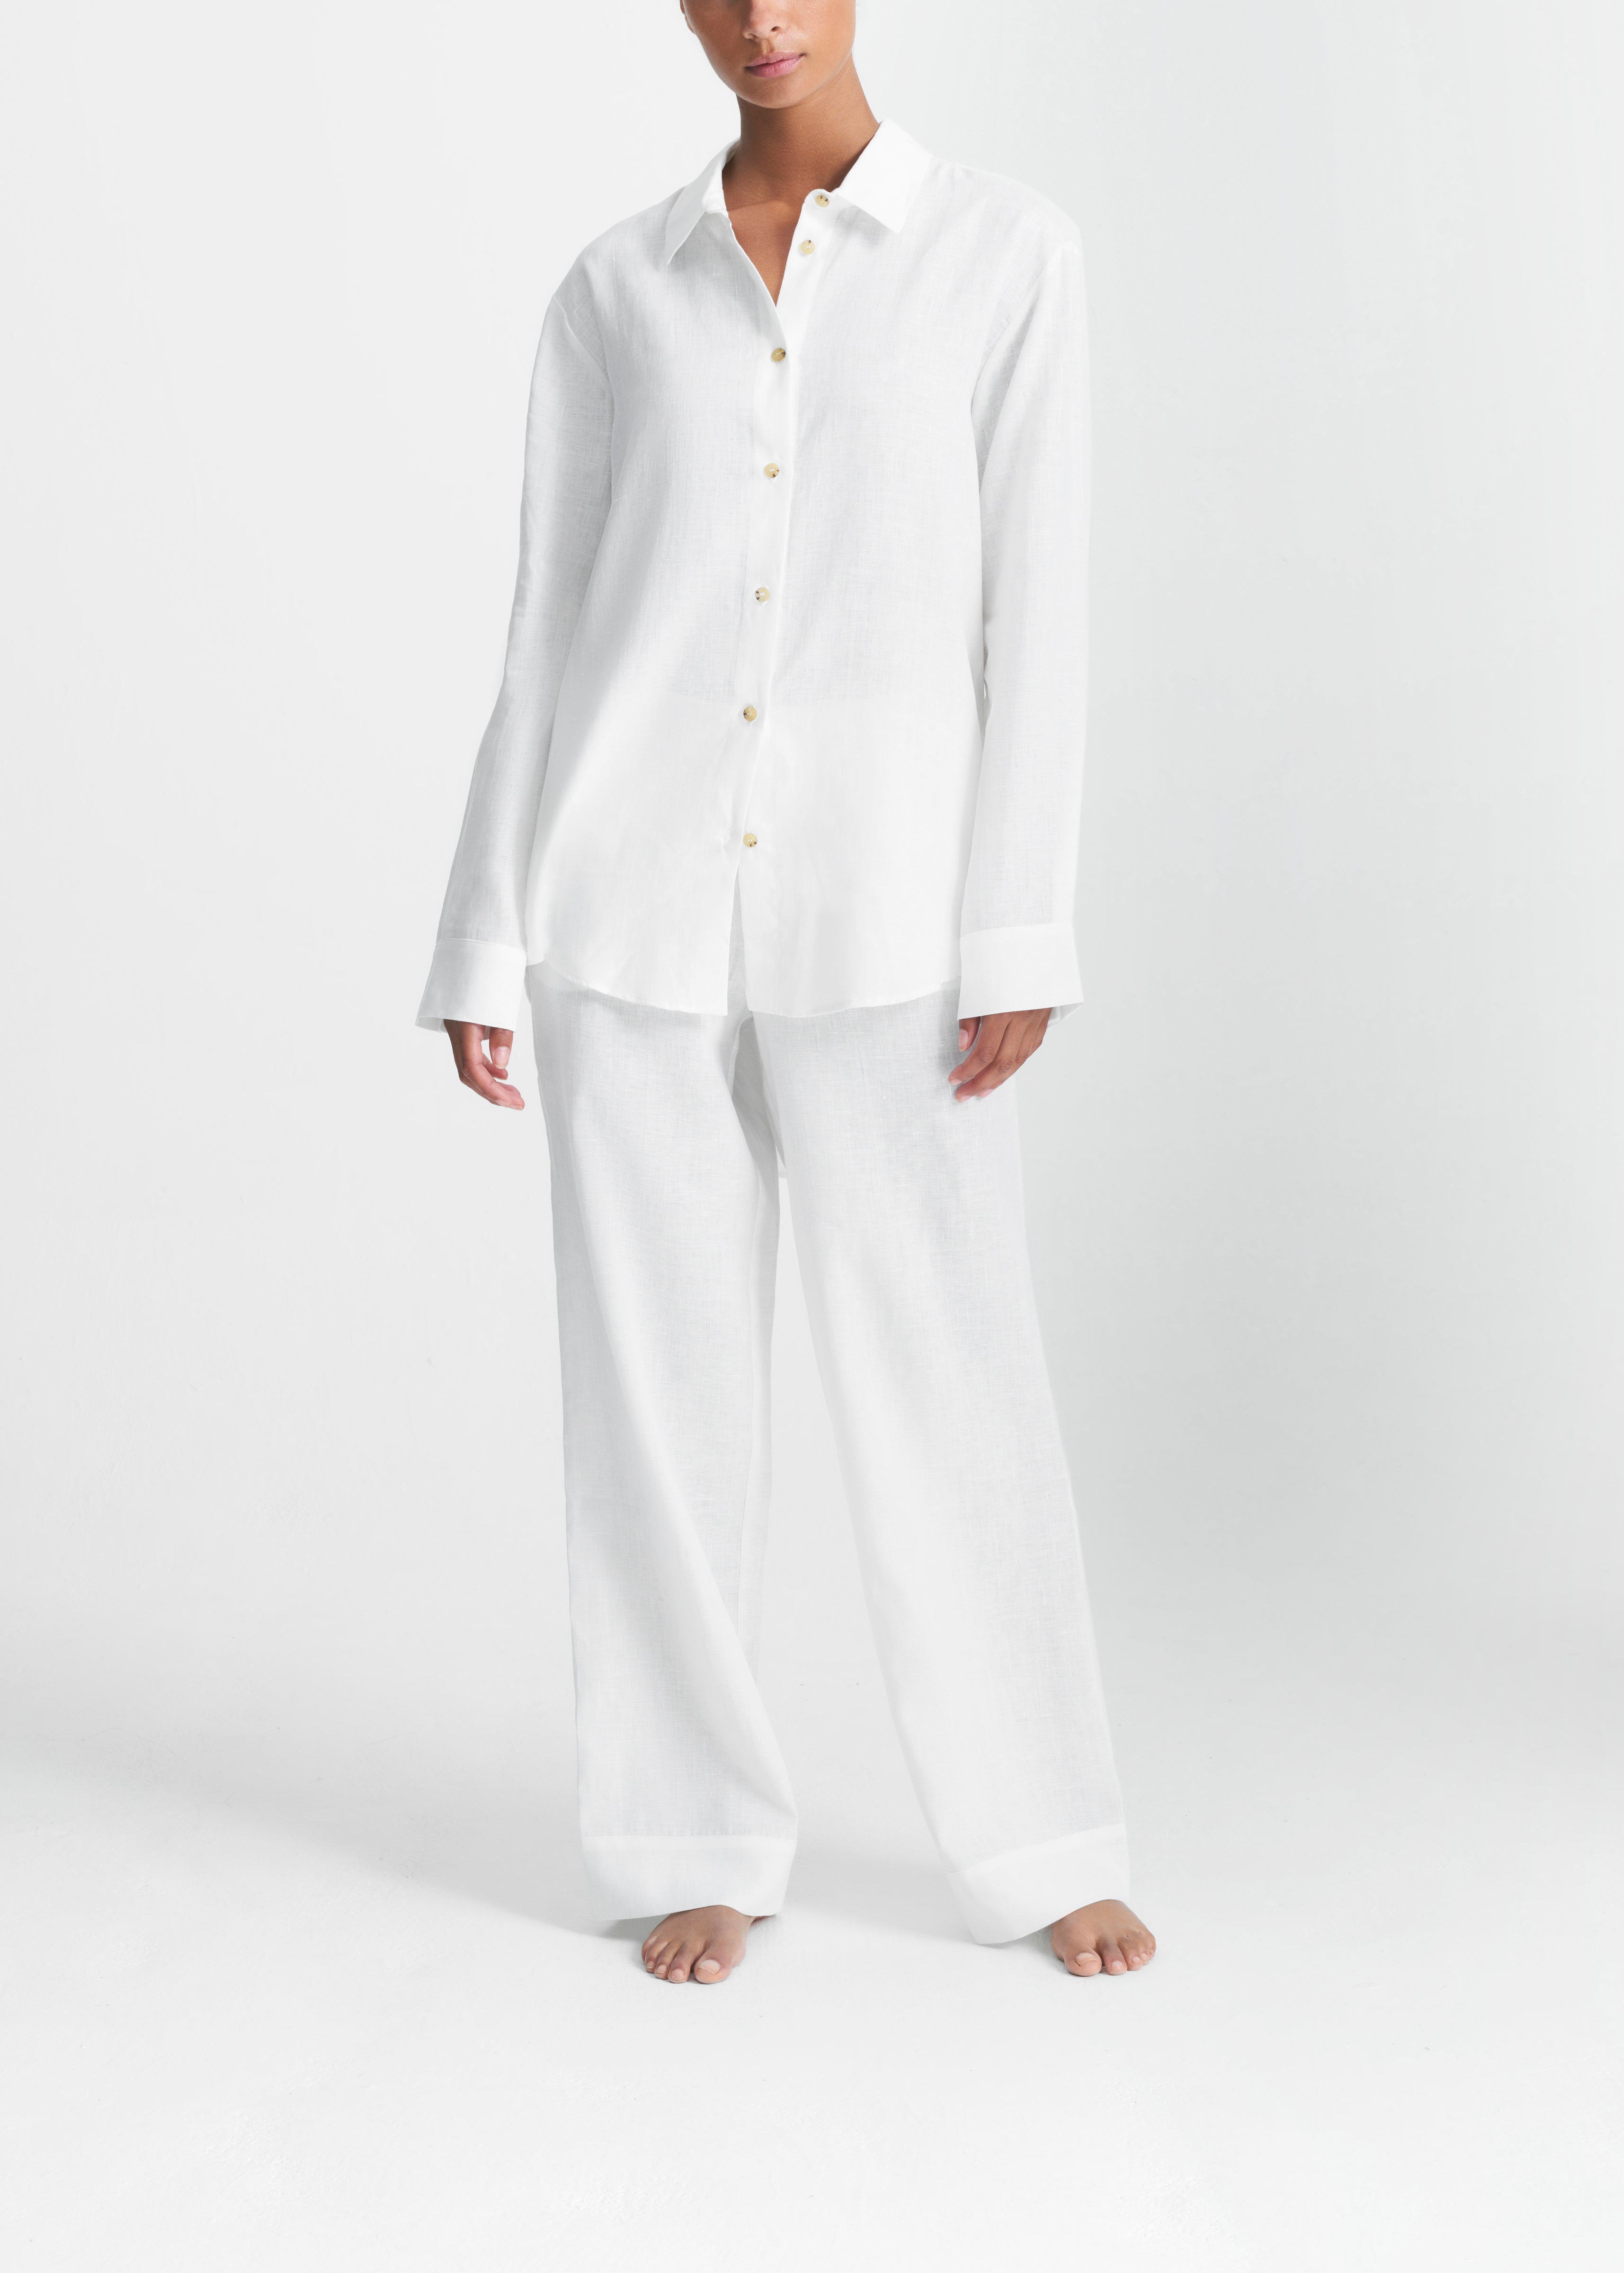 Pyjama bottoms - Dark blue/White checked - Ladies | H&M IN